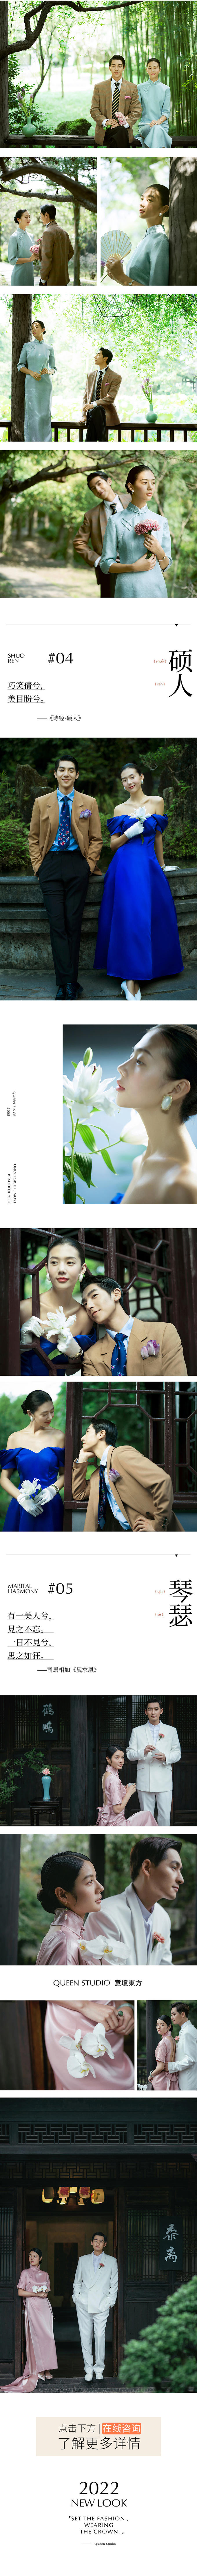 意境东方 · 旗袍新中式 ·园林婚纱照